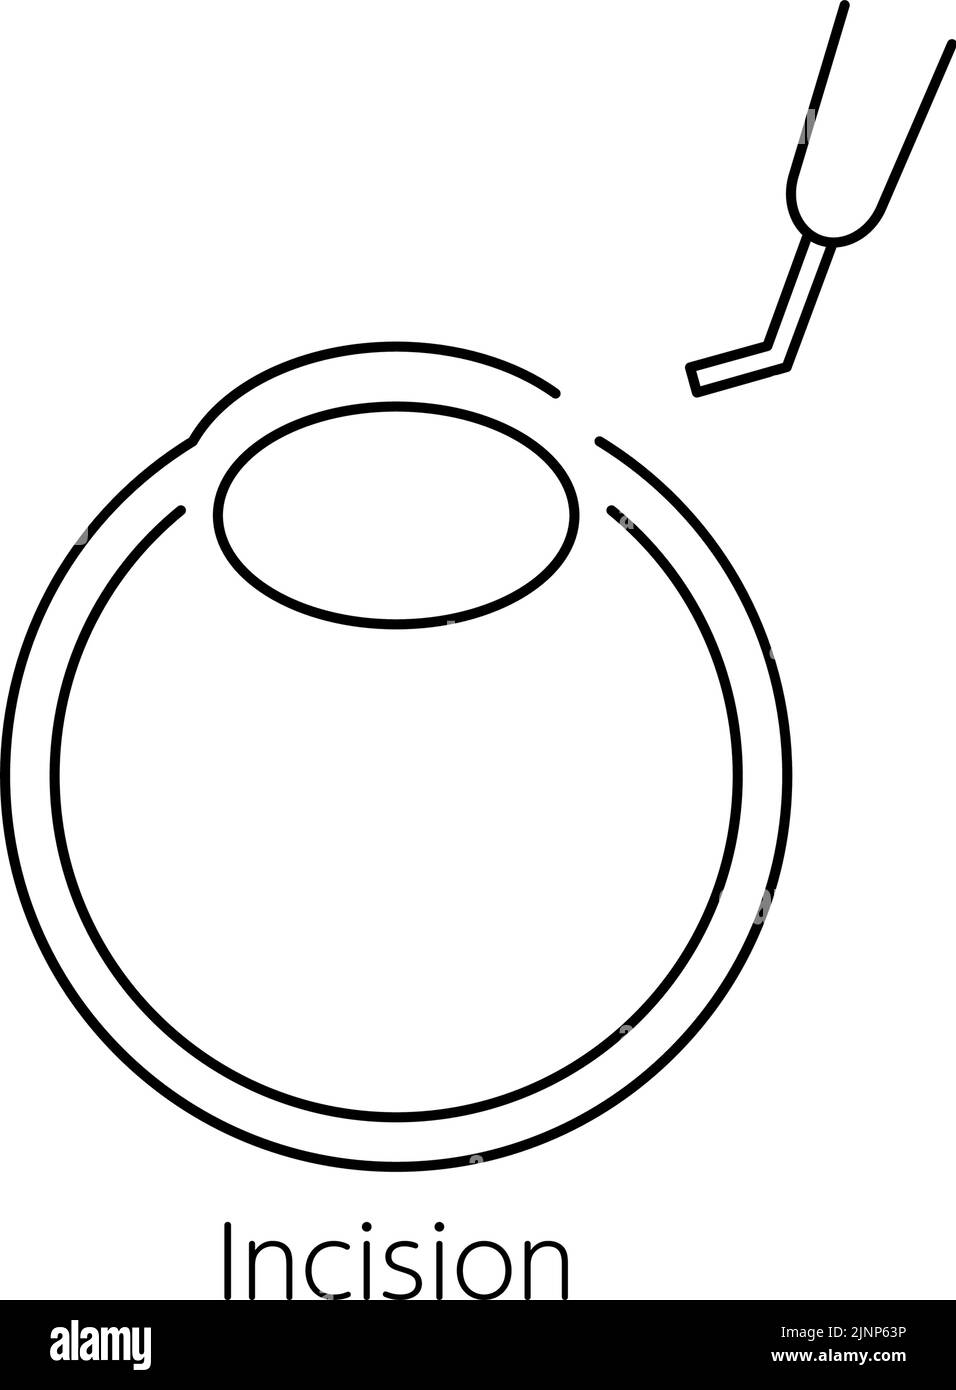 Processus de chirurgie de la cataracte, Illustration (dessin de ligne), faire une incision Illustration de Vecteur